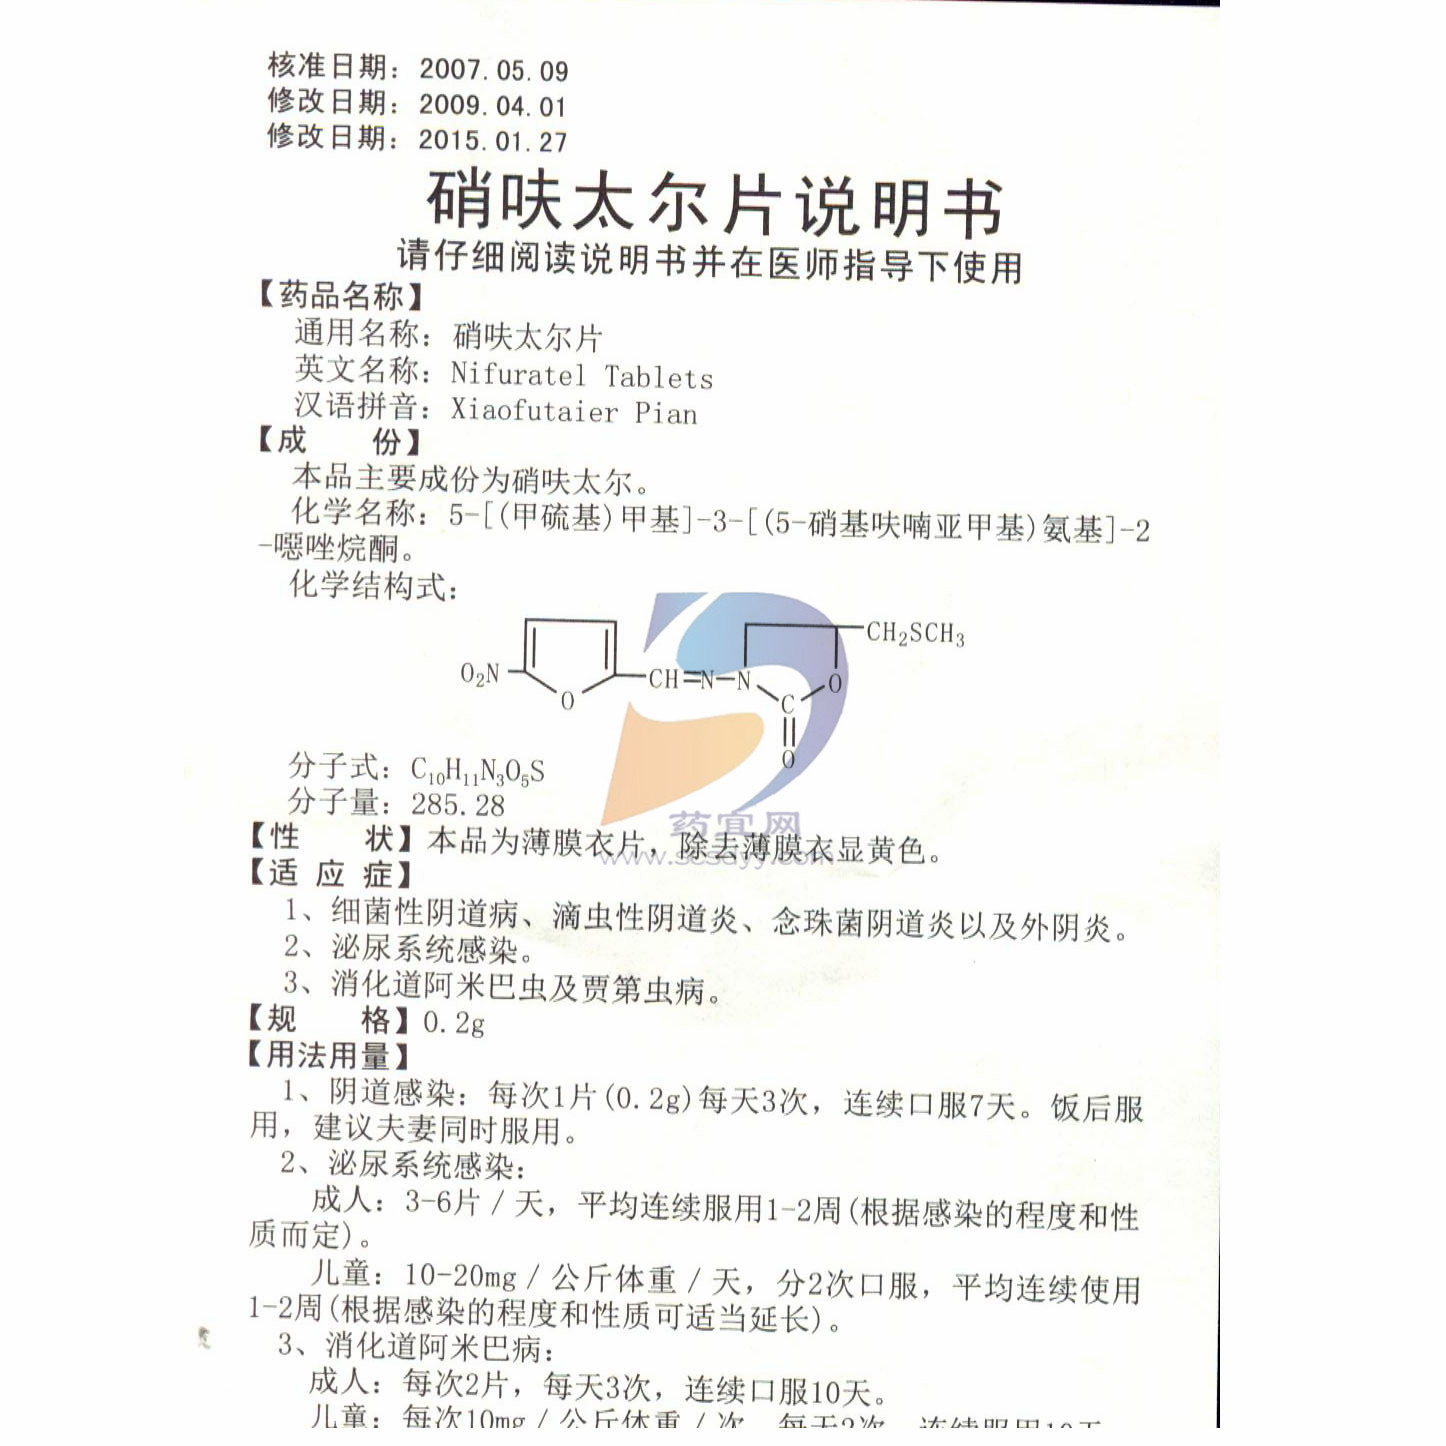 硝呋太尔制霉素阴道软胶囊（6粒） - 产品中心 - 北京金城泰尔制药有限公司（原北京朗依制药有限公司